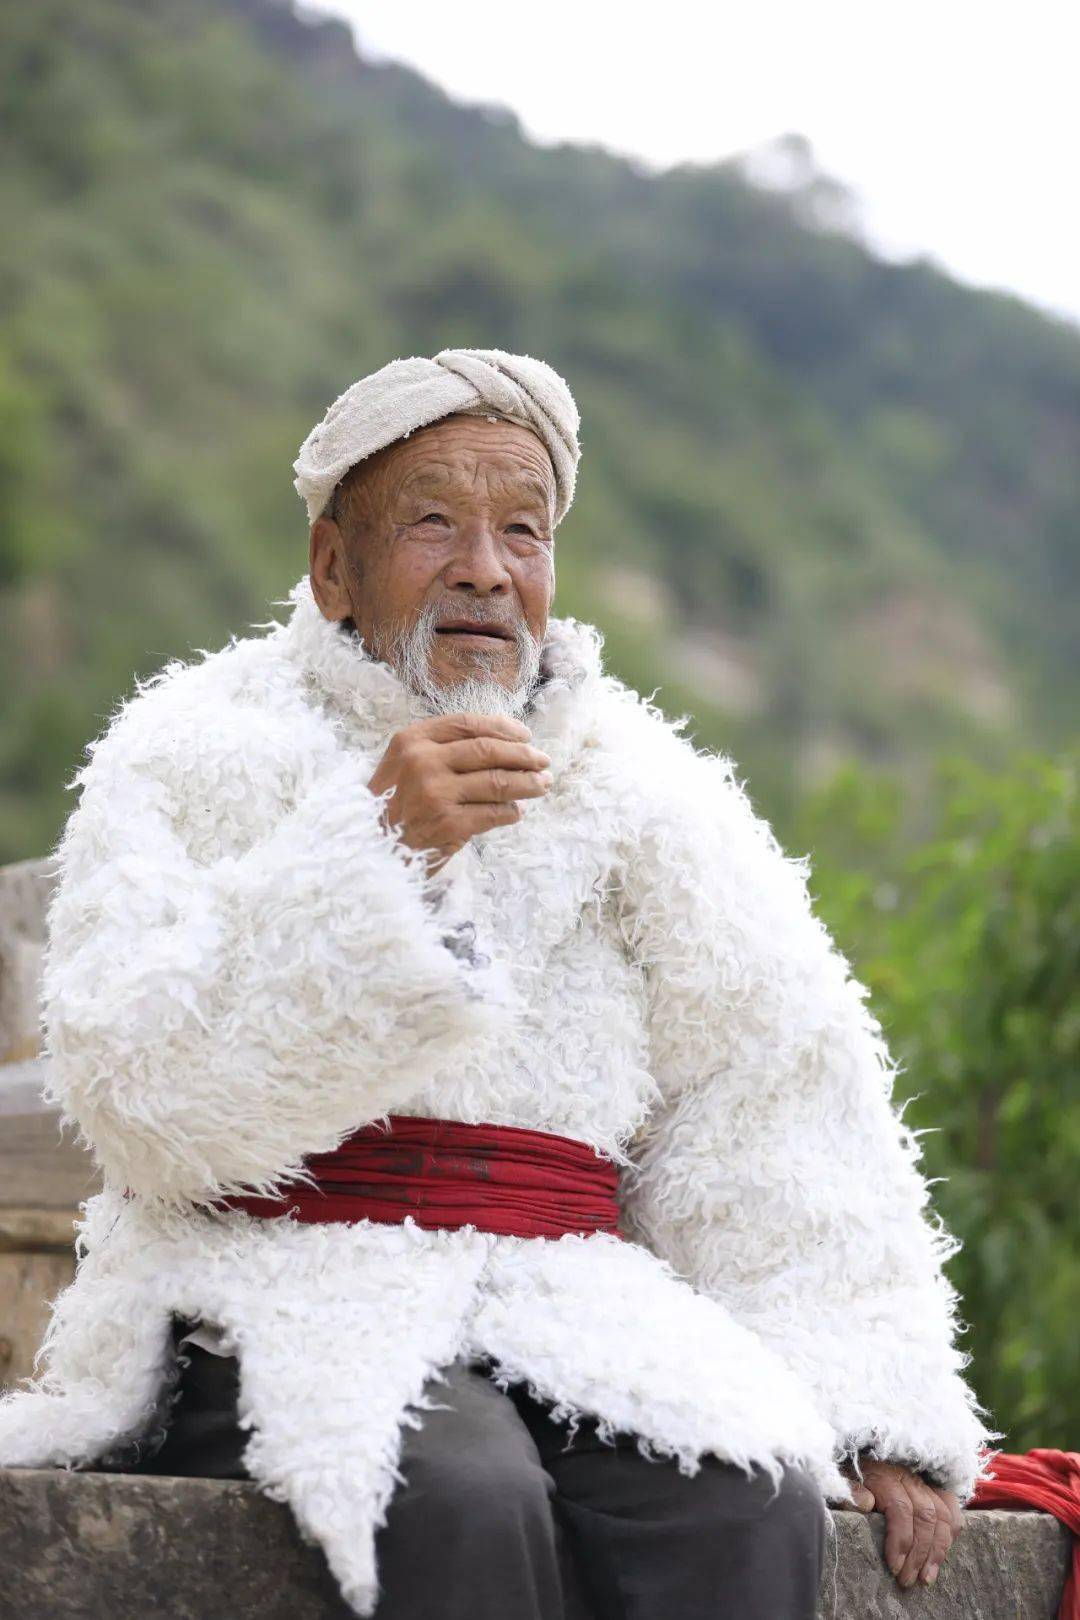 陕北放羊人穿的羊皮袄图片